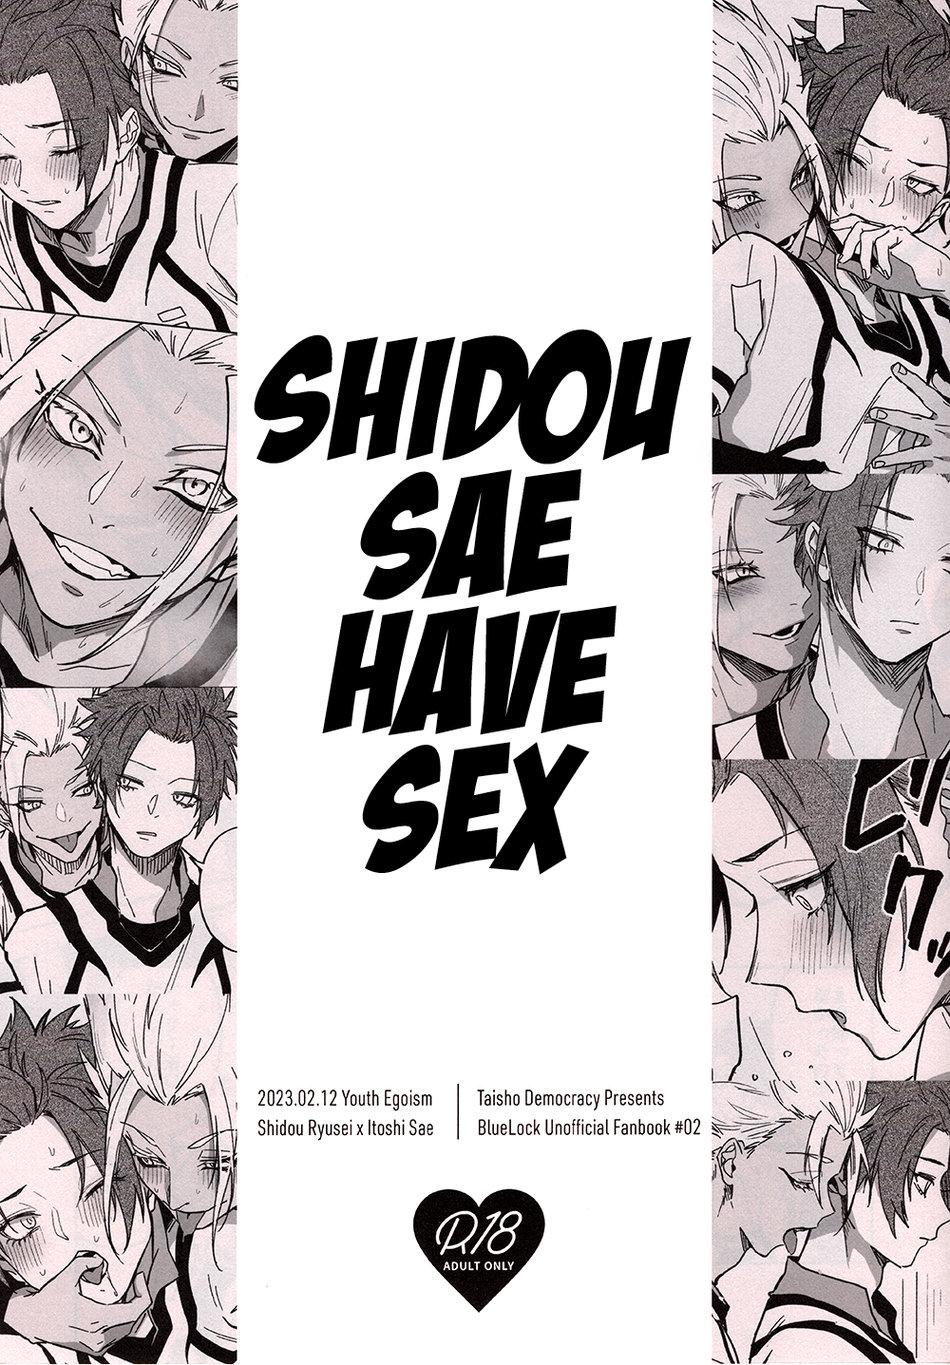 Usa Shido Sae Sex shiteru | ShidouSae have sex - Blue lock Satin - Page 1